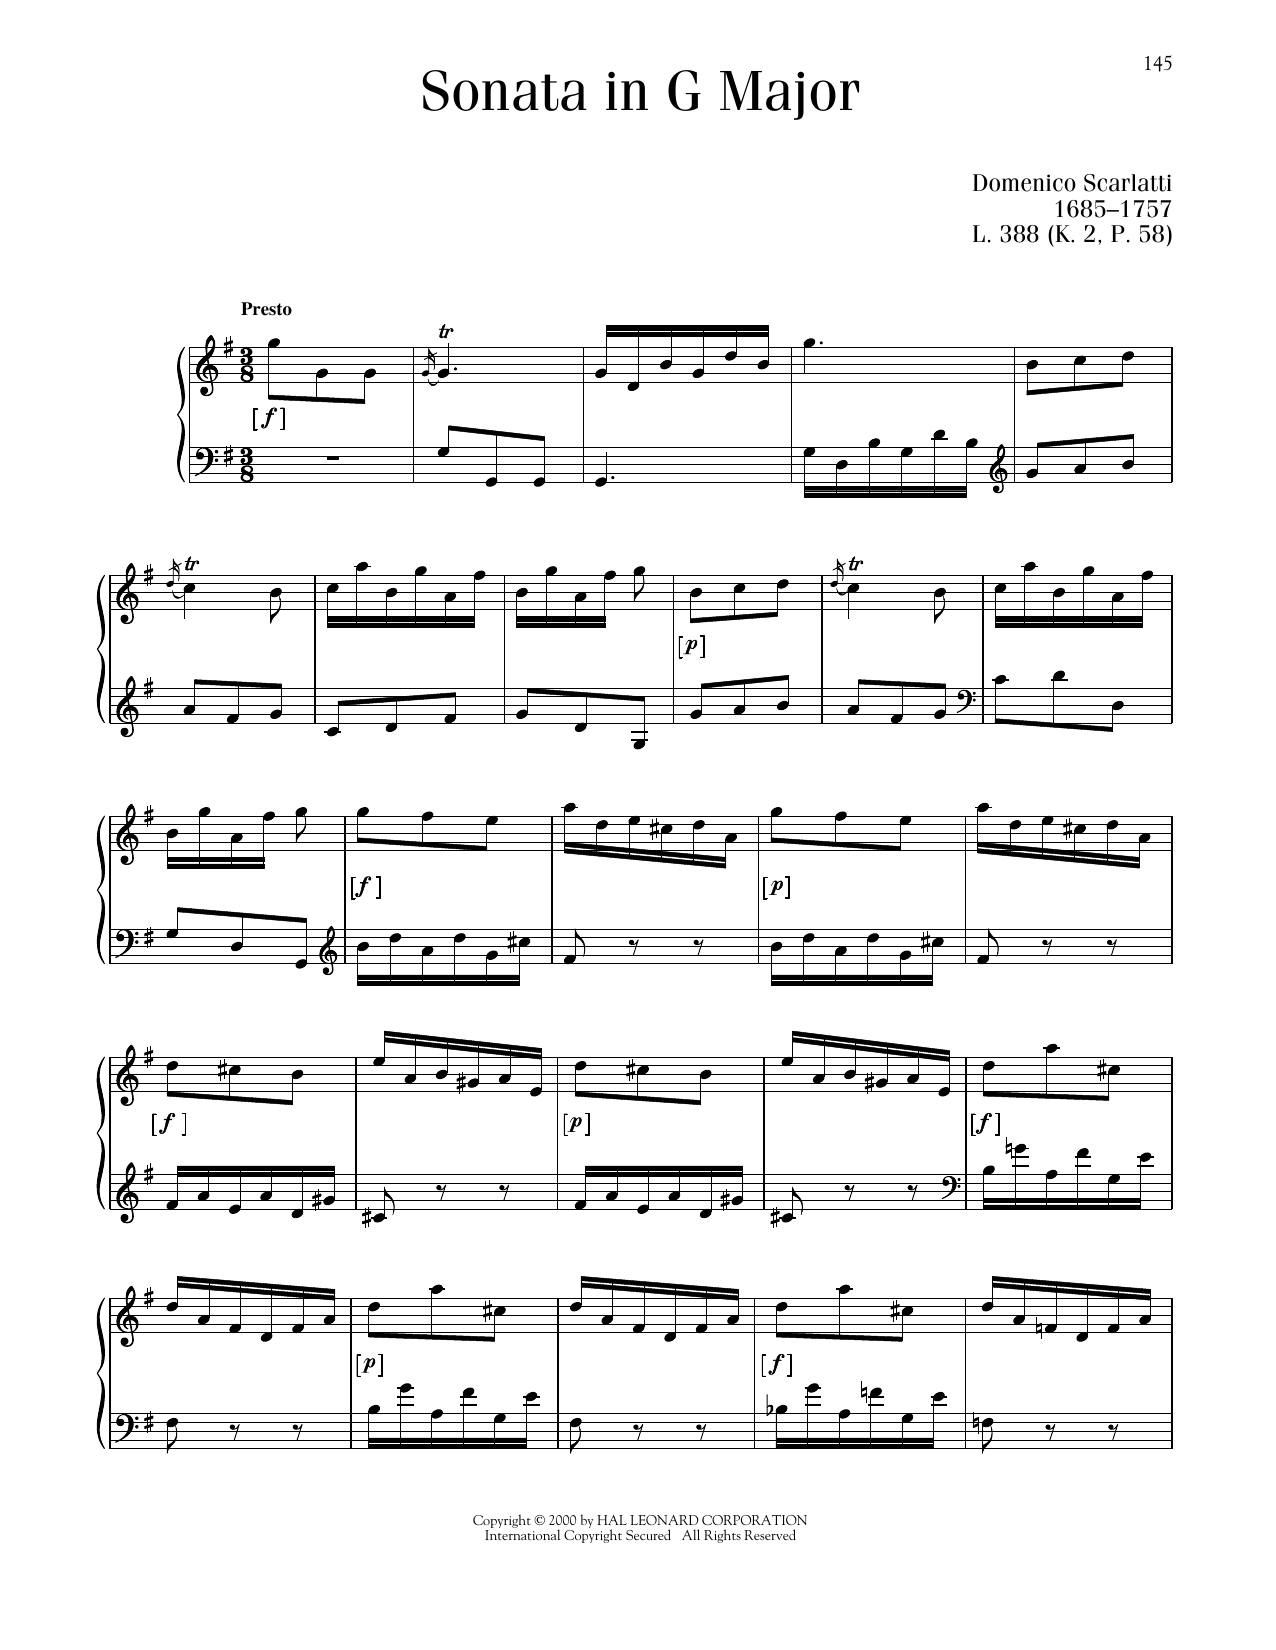 Domenico Scarlatti Sonata In G Major, L. 388 Sheet Music Notes & Chords for Piano Solo - Download or Print PDF